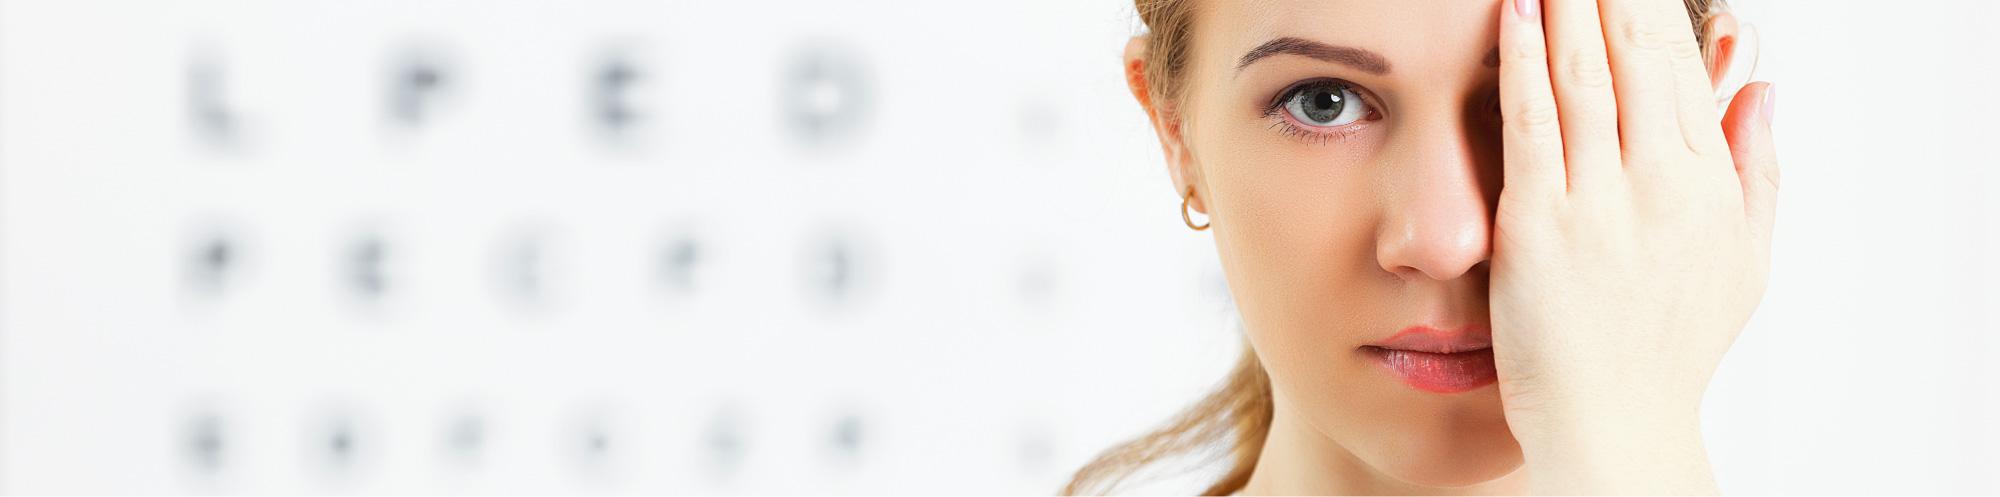 Die Praxis - Augenarztpraxis Buchen